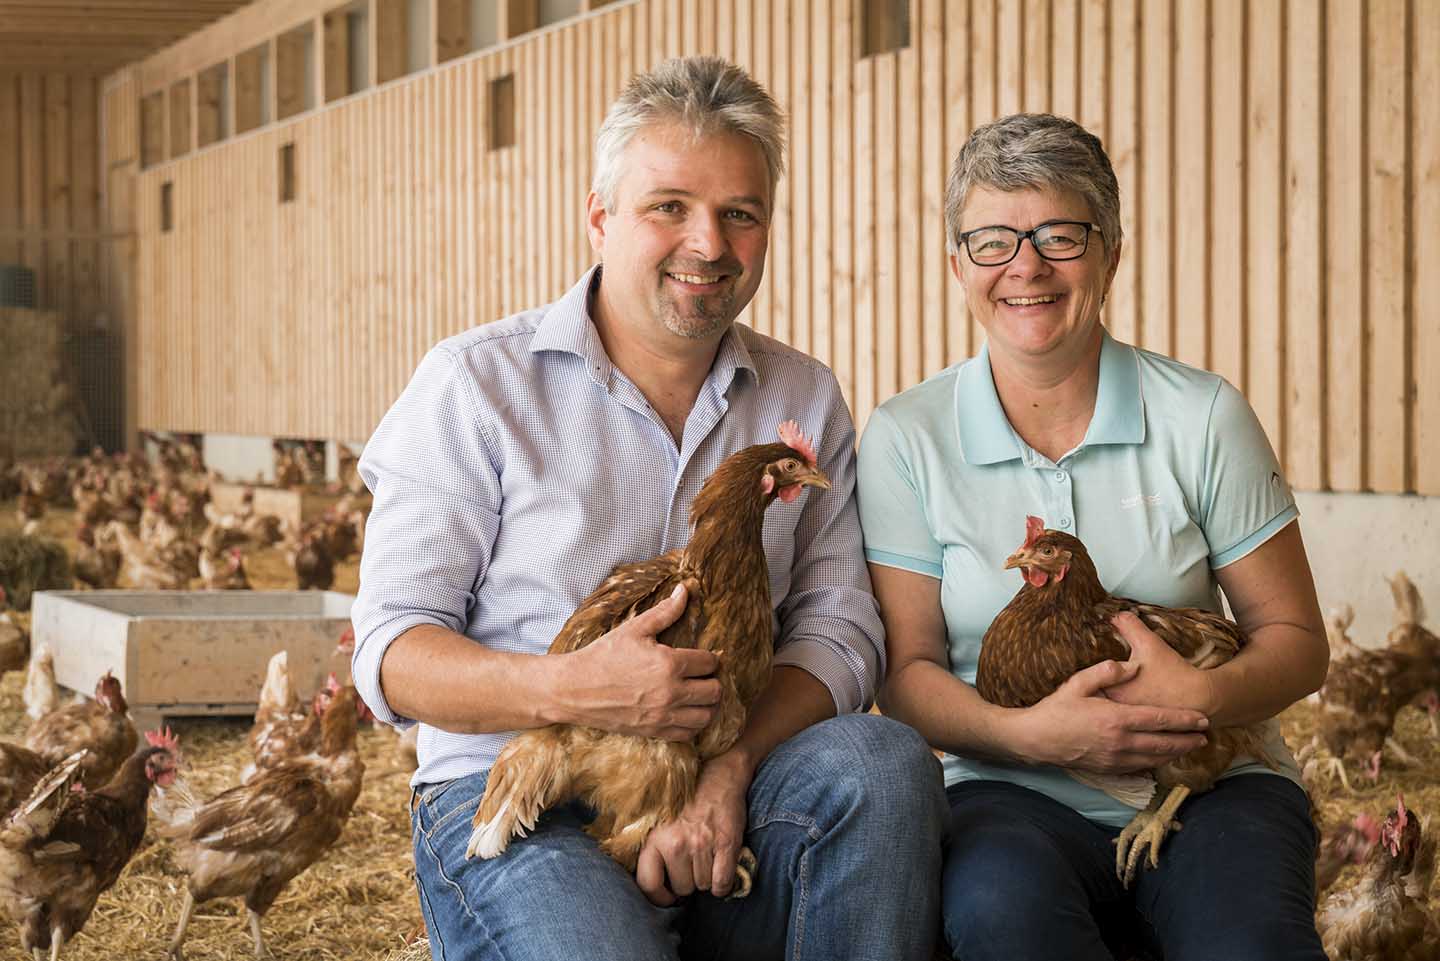 Claudia Und Gerd Giselbrecht Sitzen In Ihrem Hünherstall Inmitten Der Hühner. Beide Halten Ein Huhn In Der Hand.